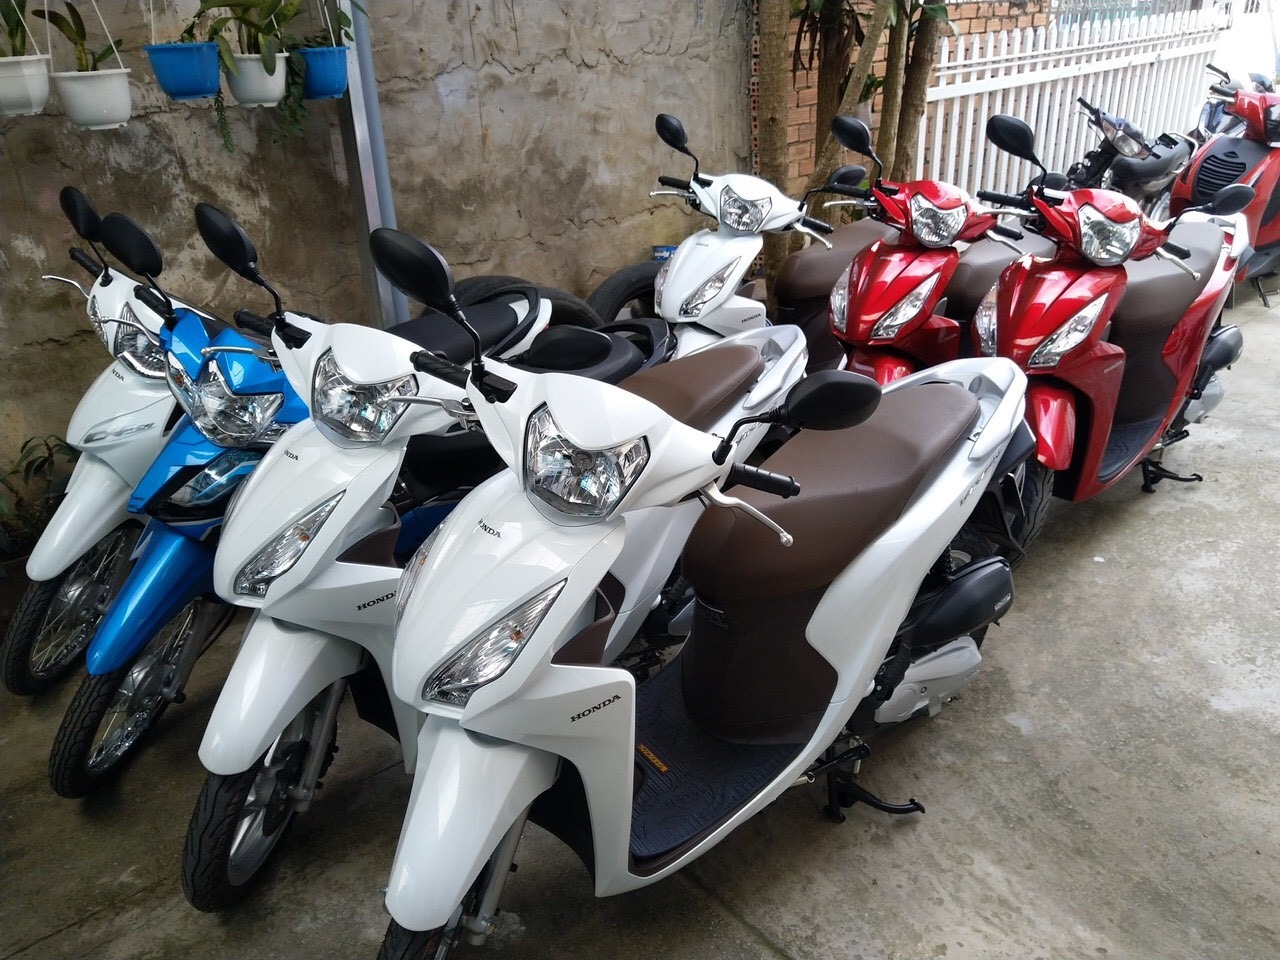 thuê xe máy Hà Nội